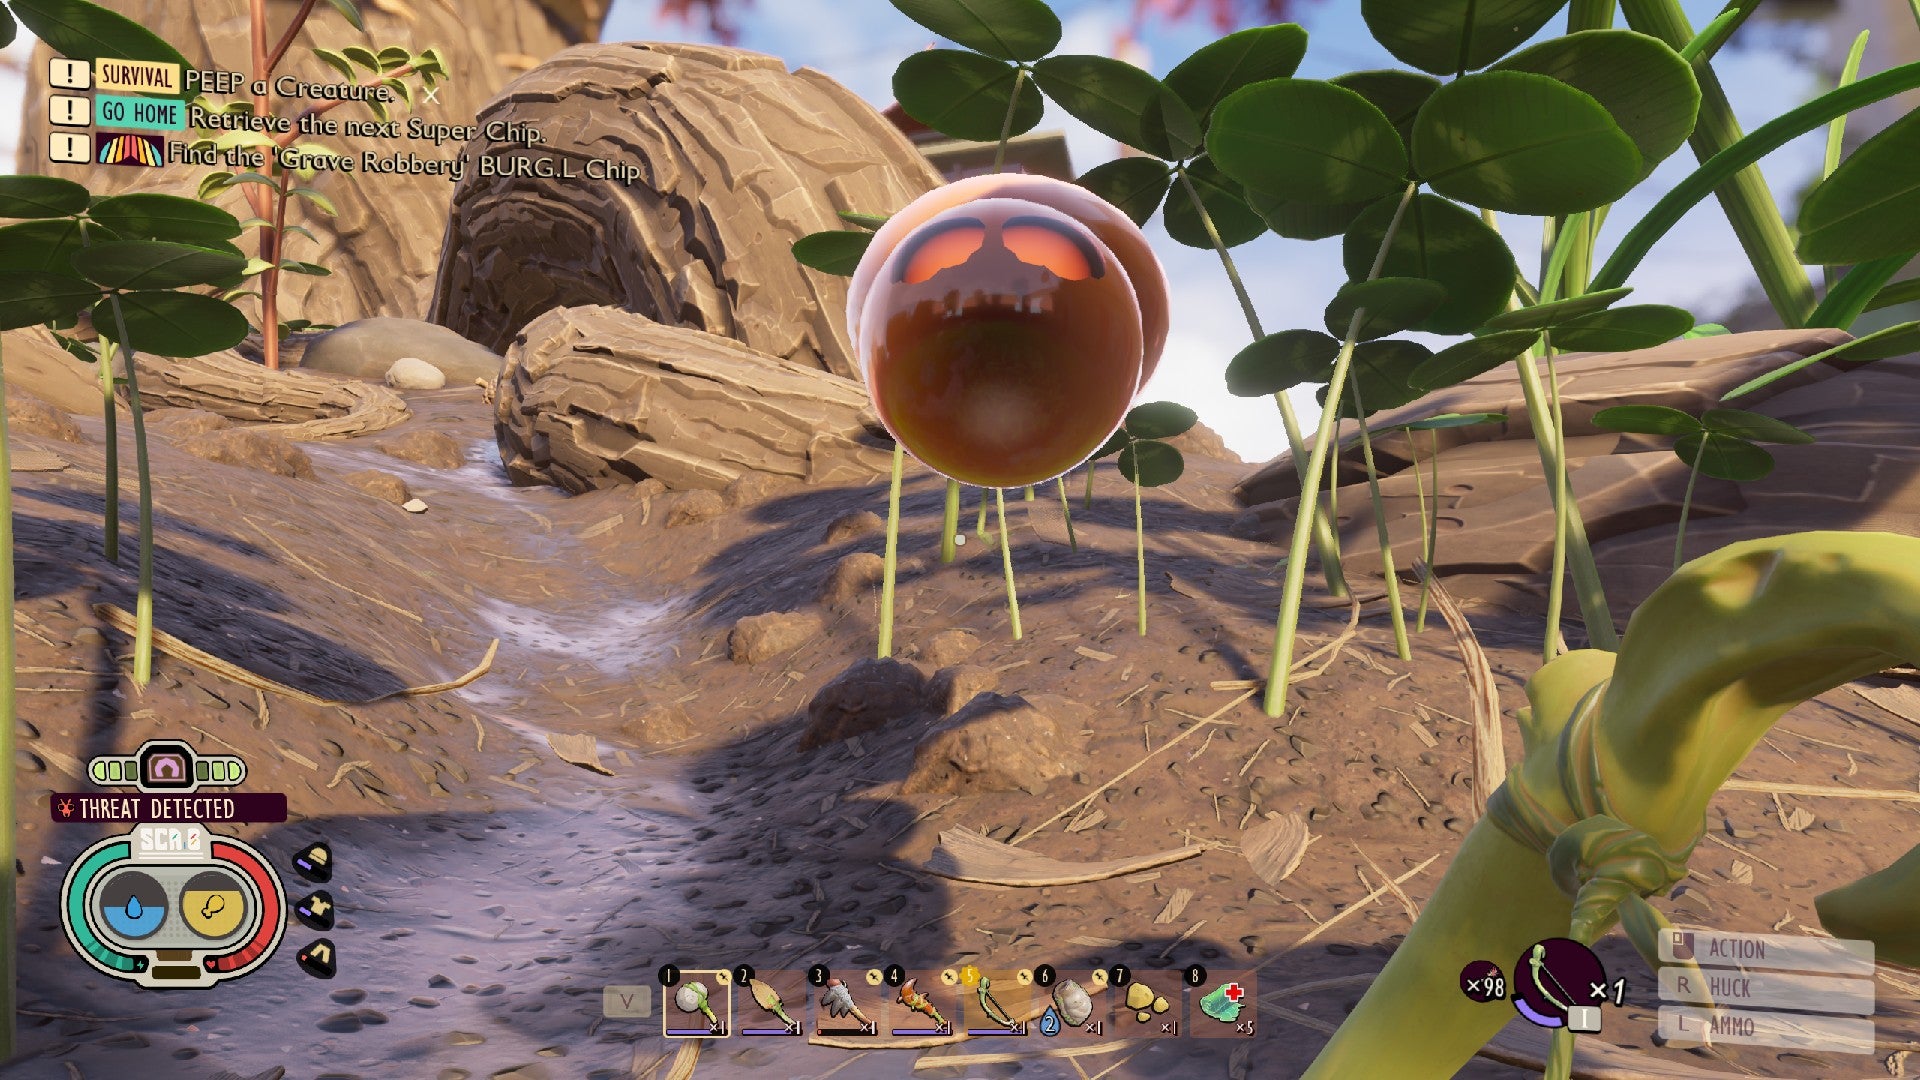 Jugador conectado a tierra que mira fijamente la mancha naranja con ojos rojos radiantes que representa una araña en modo aracnofobia.